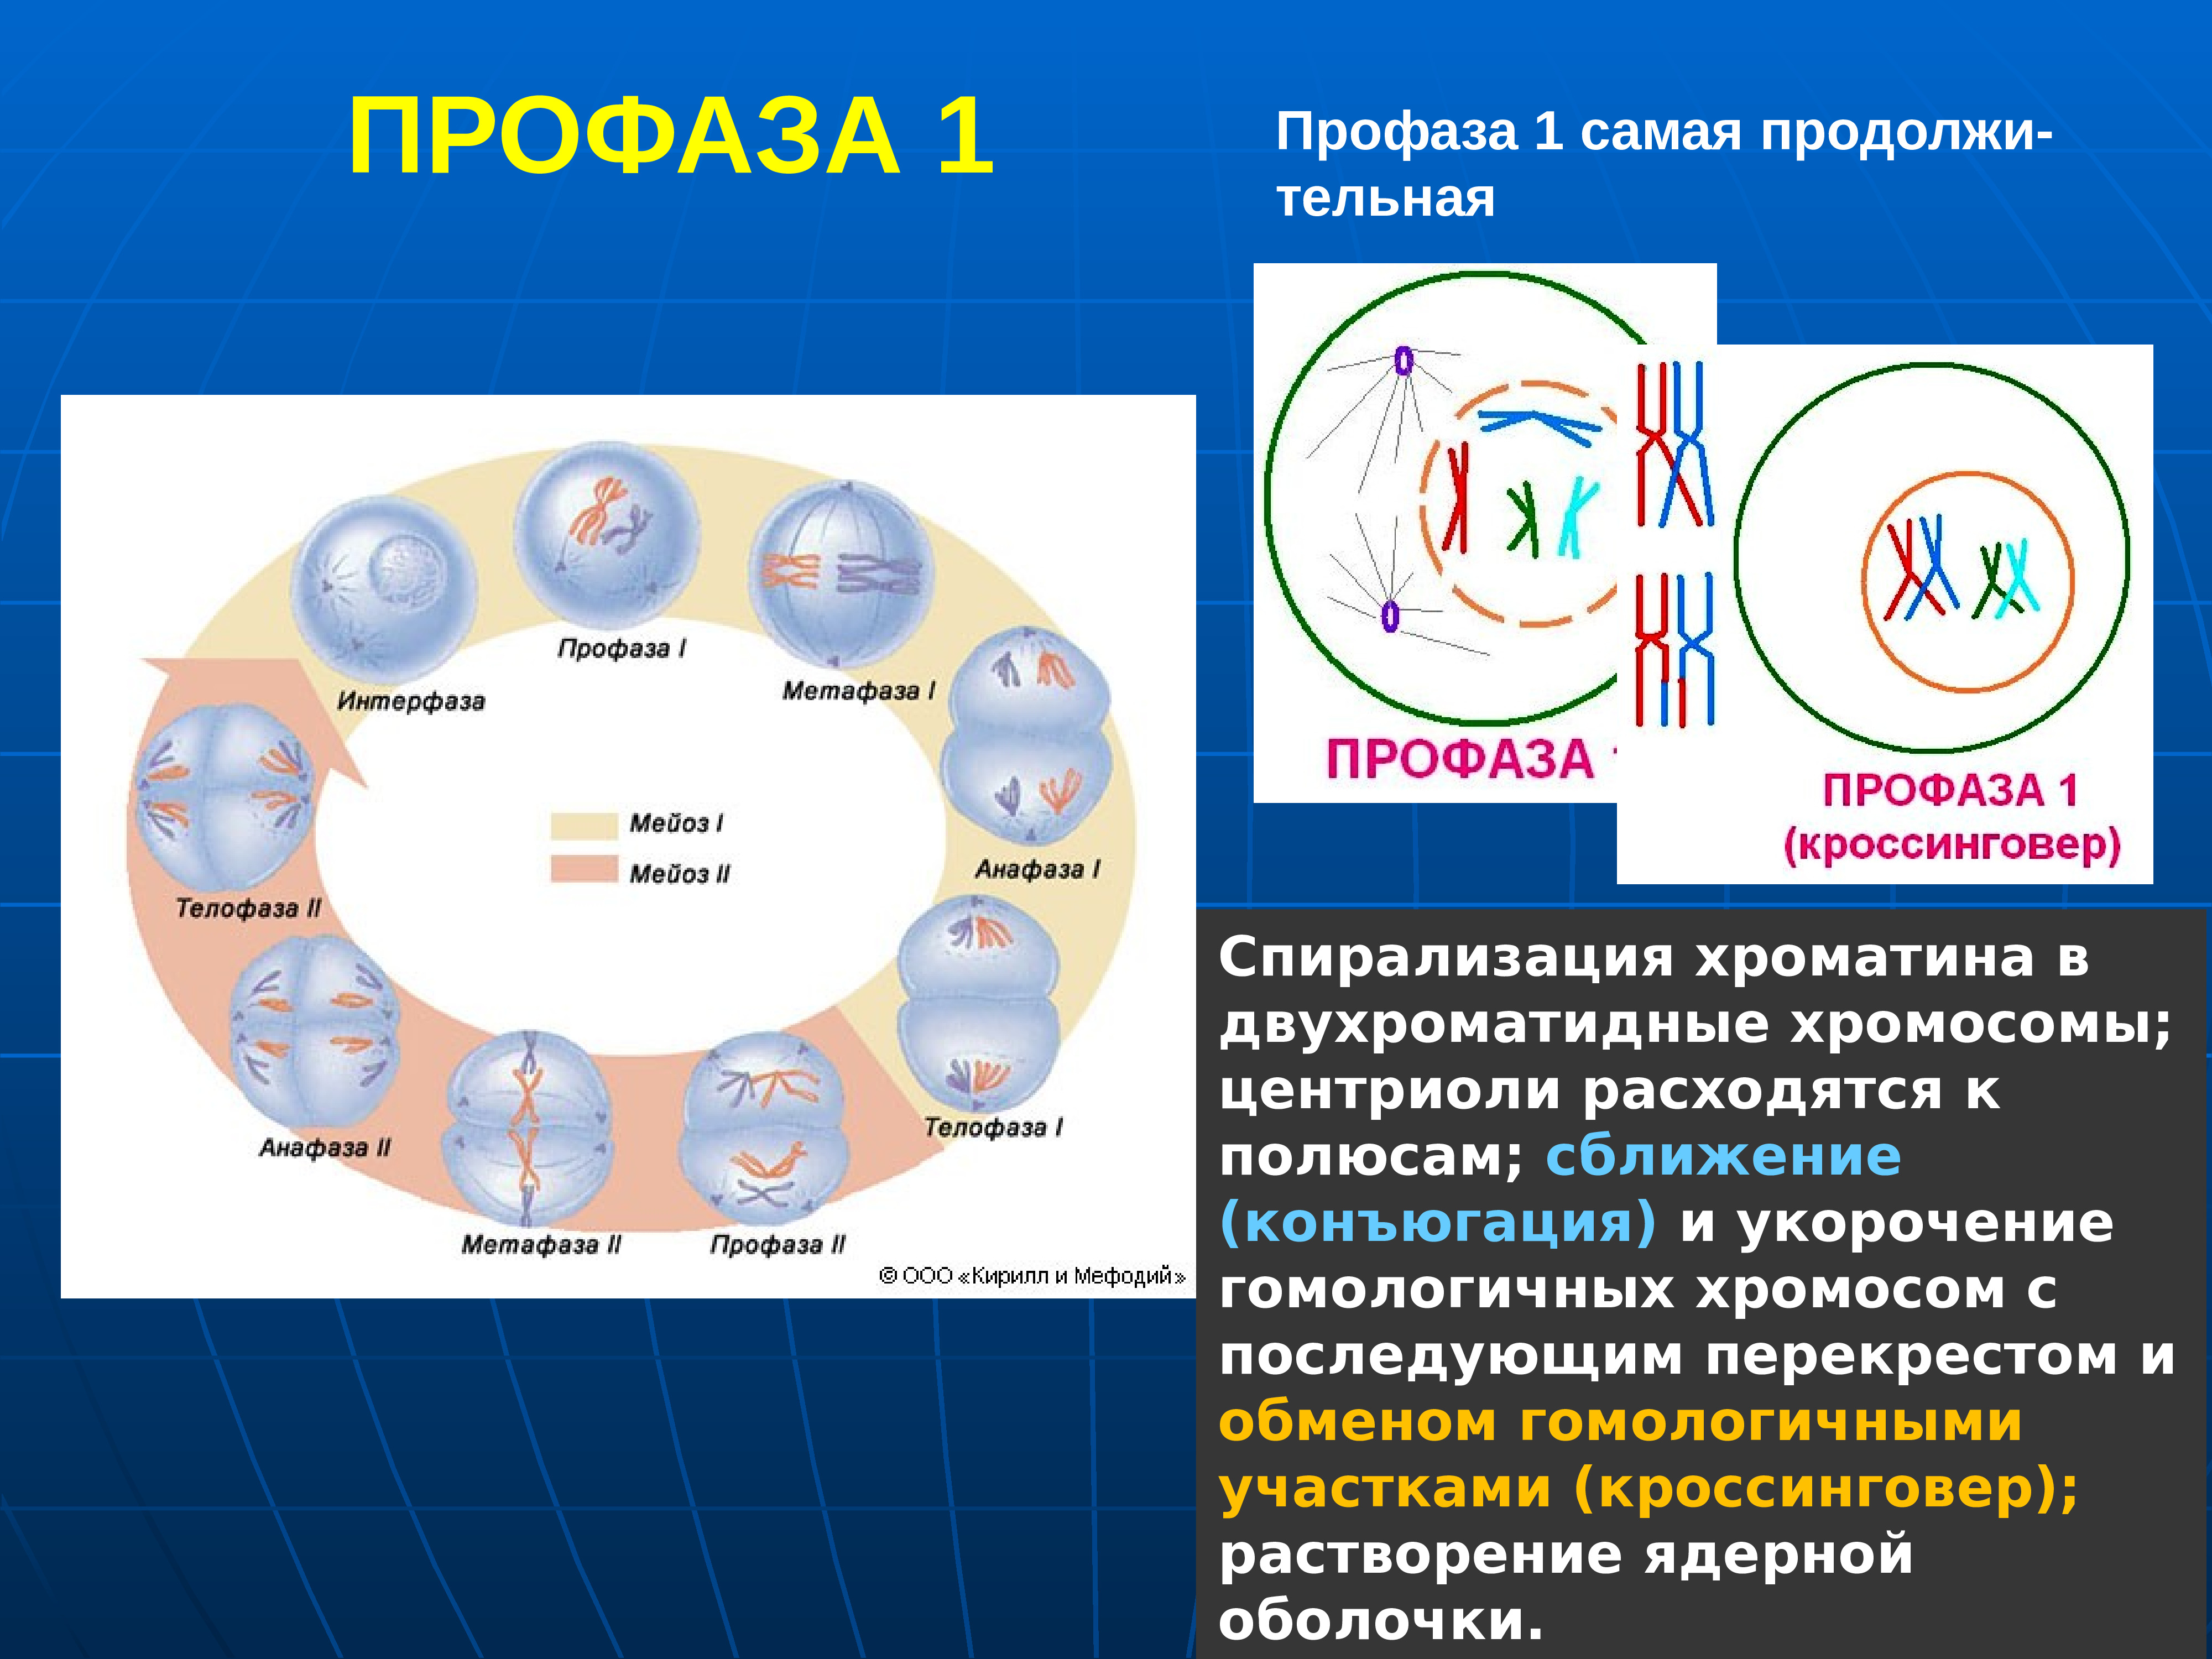 Образование двухроматидных хромосом спирализация хромосом. Стадии профазы 1 мейоза 1. Интерфаза мейоза 1. Мейоз интерфаза 1 и профаза. Профаза мейоза конъюгация.